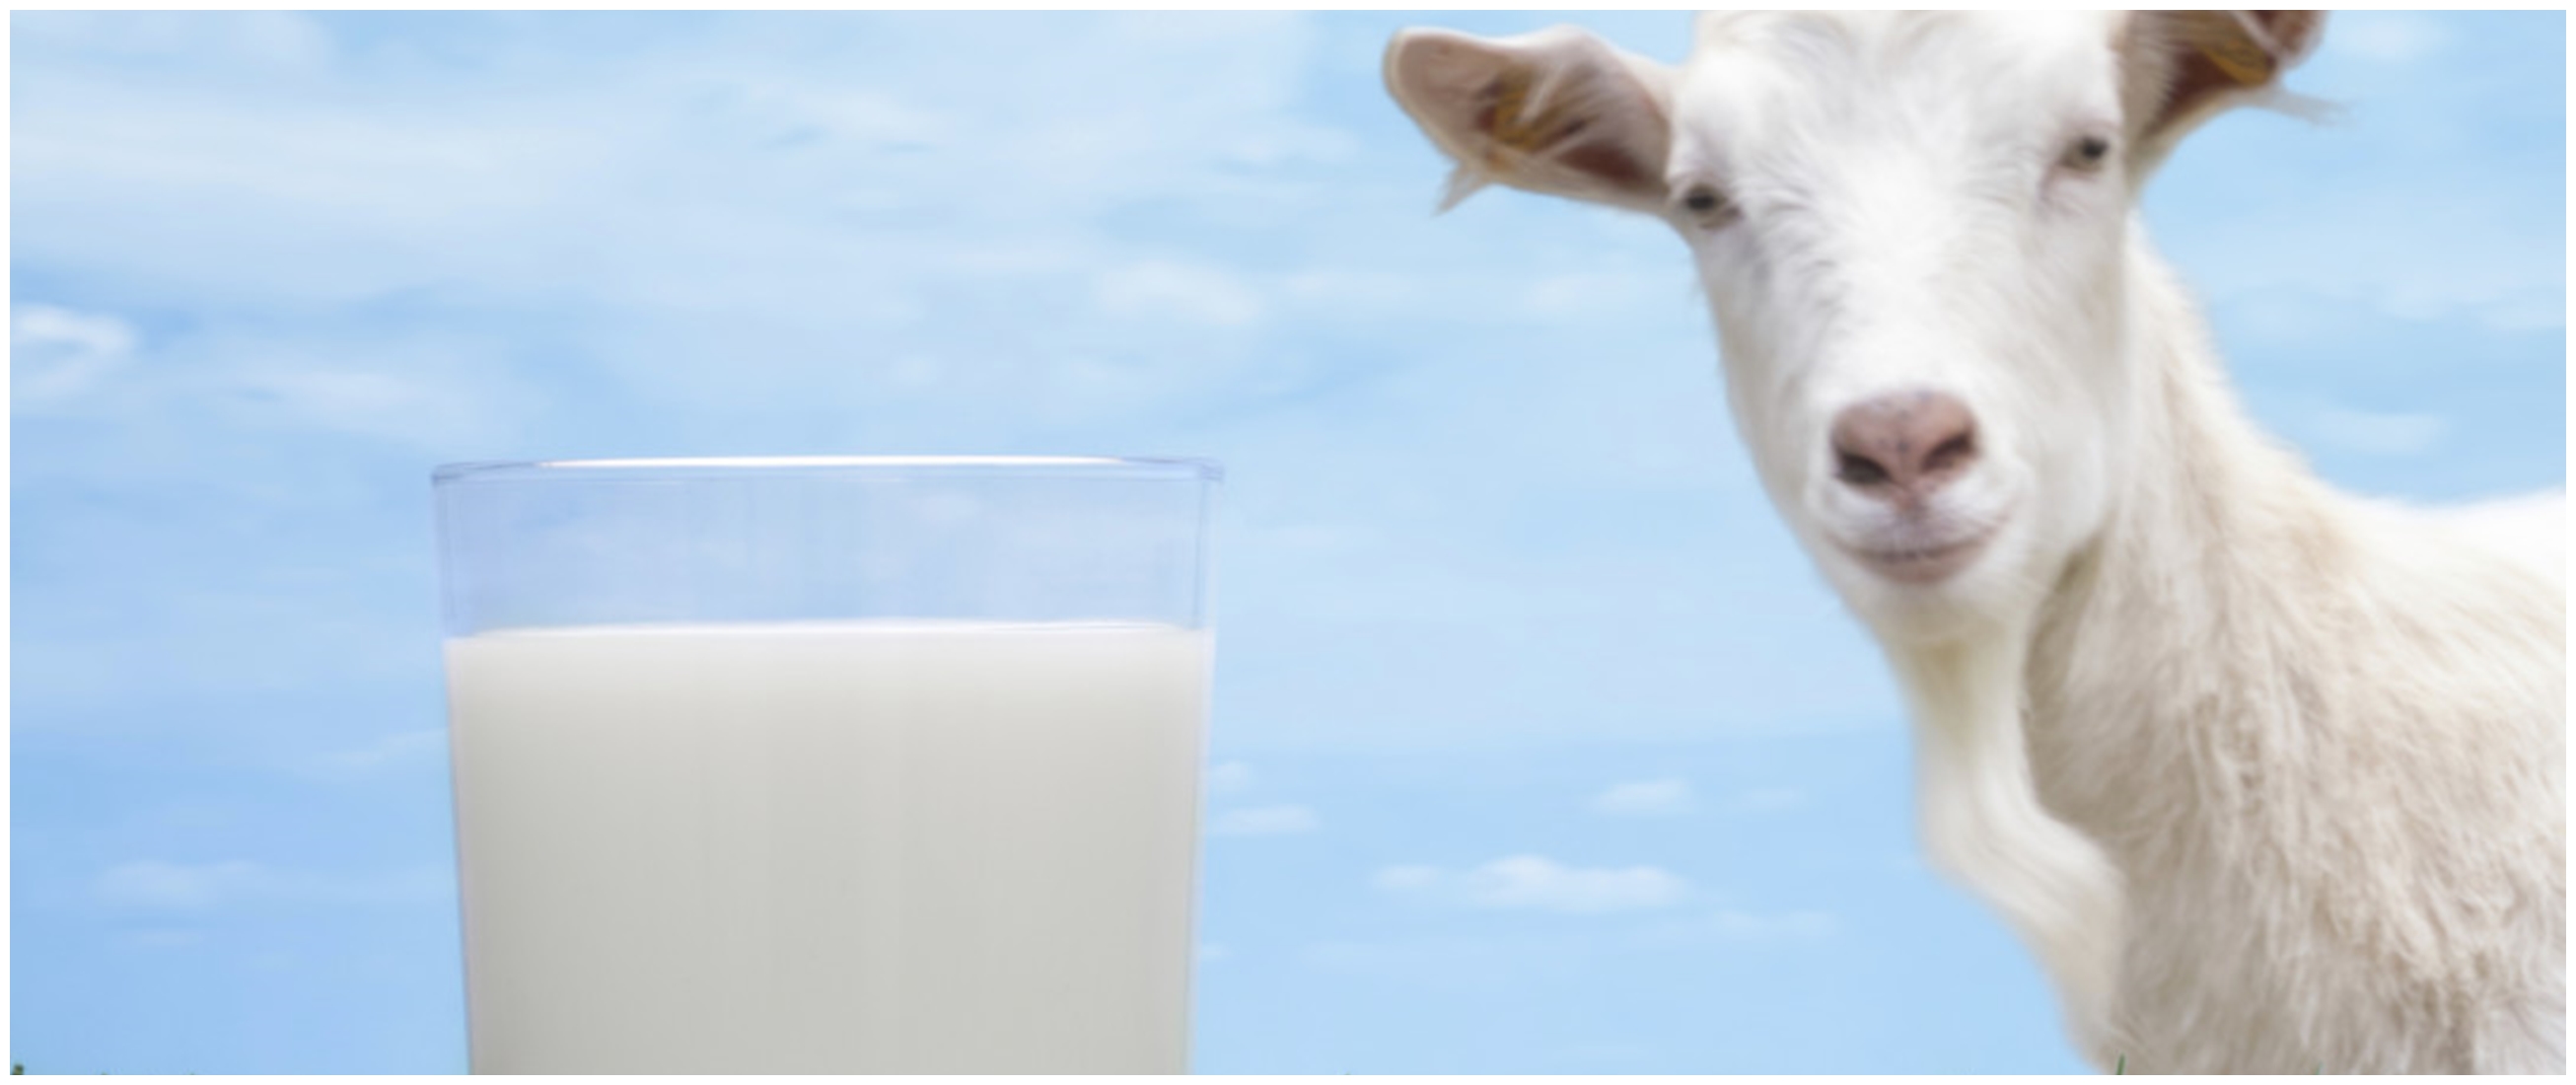 39 Manfaat susu kambing untuk kesehatan yang jarang diketahui